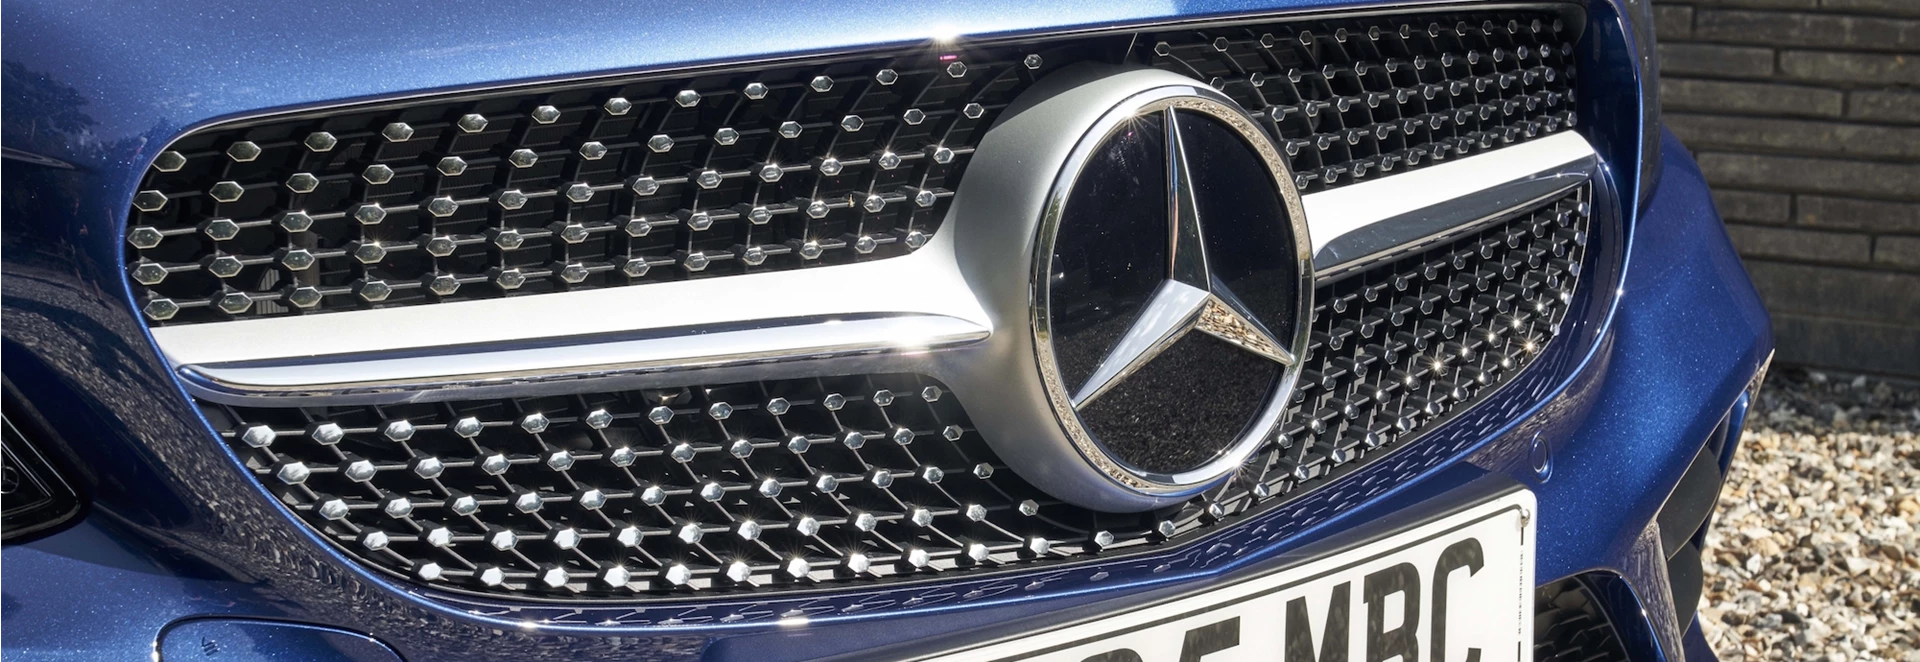 Mercedes-Benz sets new car sales record in October 